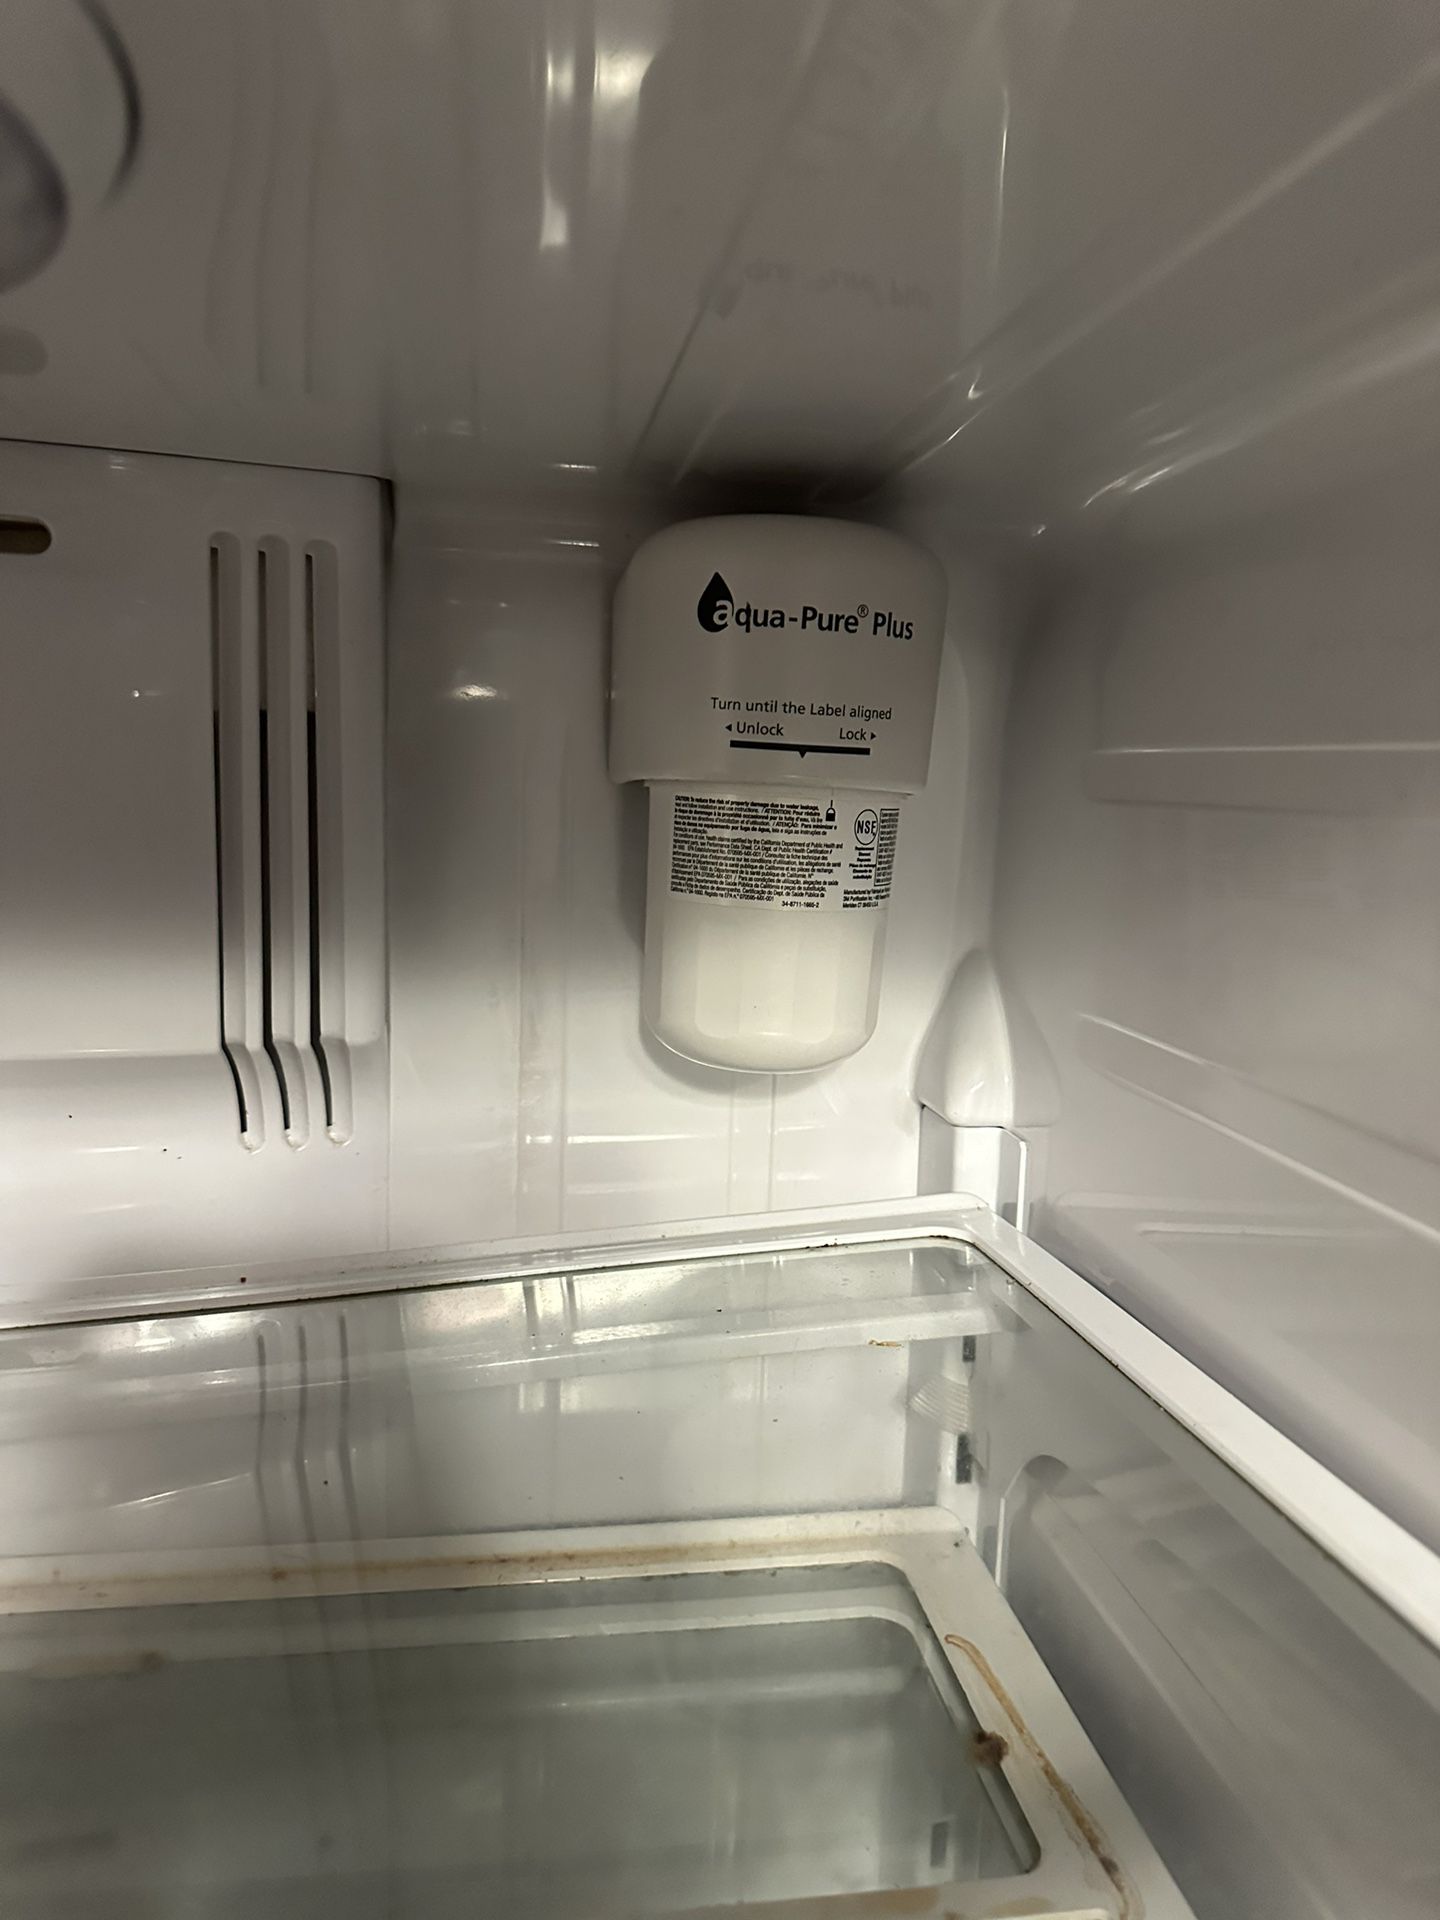 Samsung Rfg238 Refrigerator for Sale in Odessa, TX - OfferUp